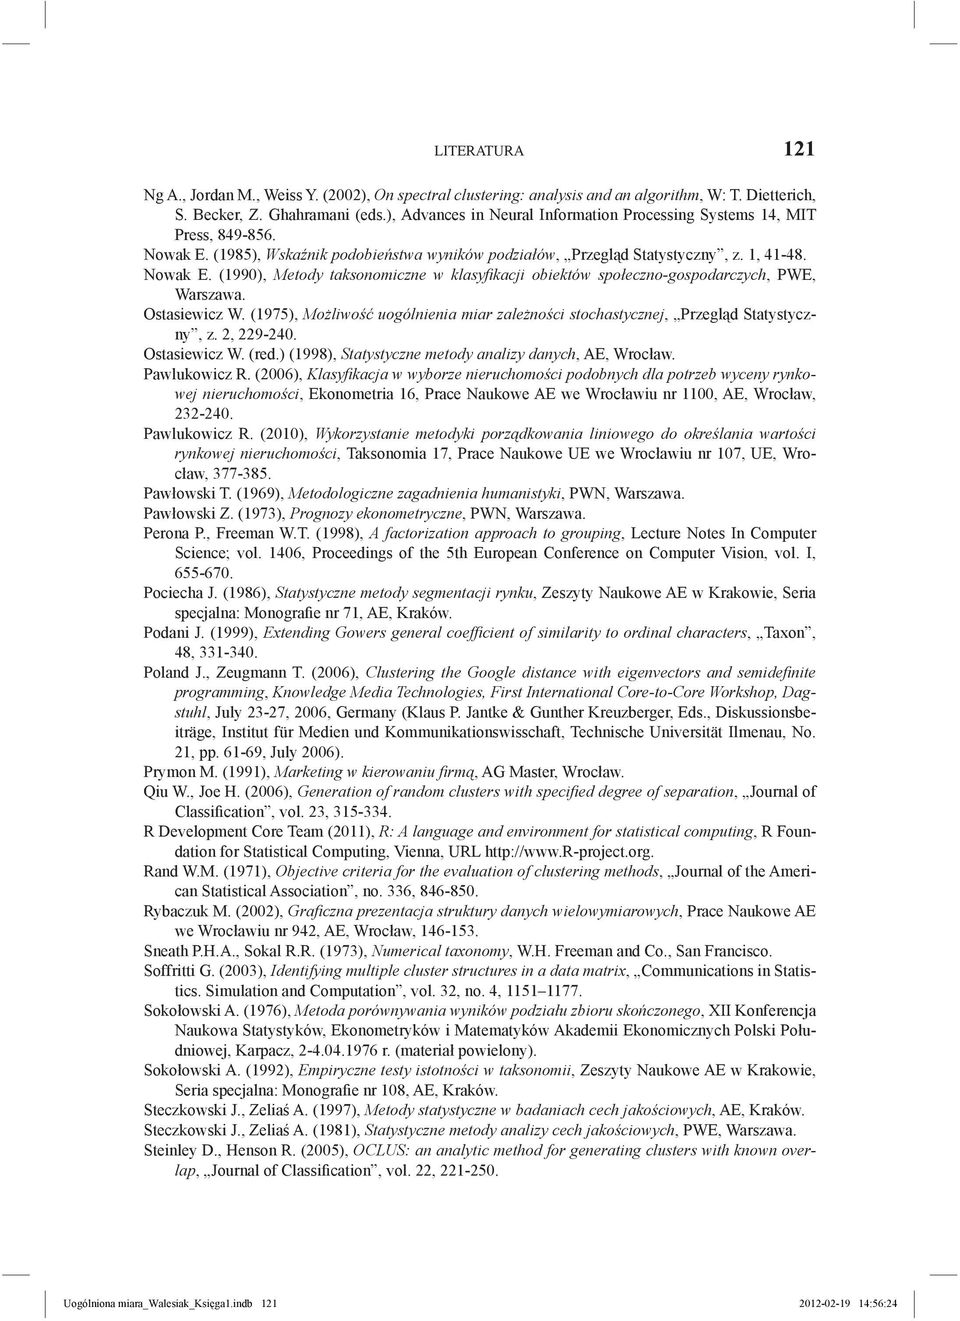 Ostasiewicz W. (1975), Możliwość uogólnienia miar zależności stochastycznej, Przegląd Statystyczny, z. 2, 229-240. Ostasiewicz W. (red.) (1998), Statystyczne metody analizy danych, AE, Wrocław.